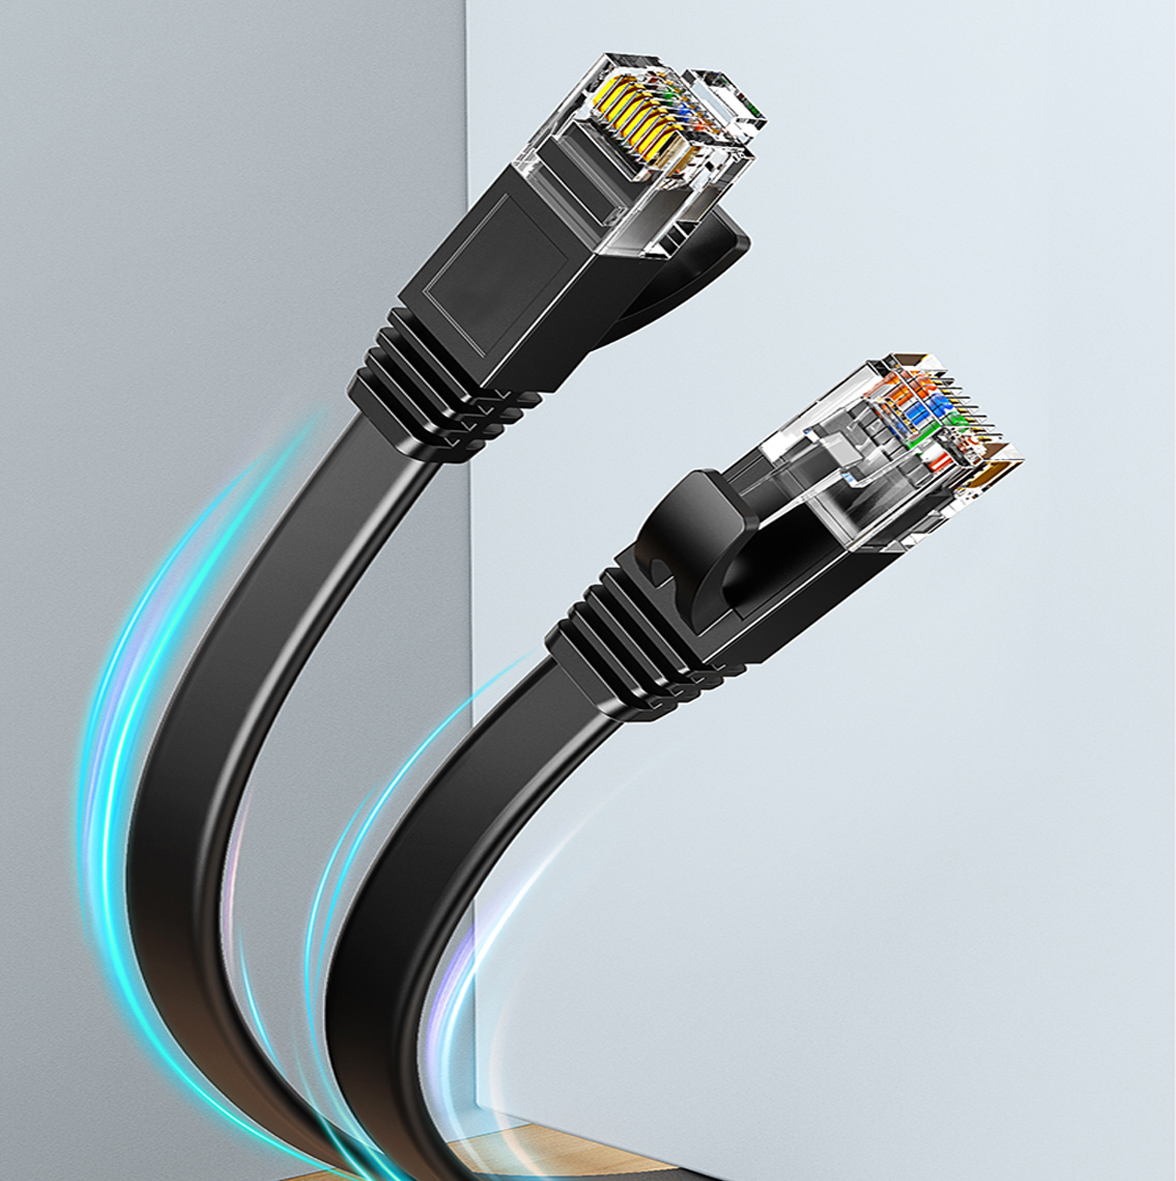 UGREEN Cat 7 Plat Câble Ethernet Réseau RJ45 Haut Débit 10Gbps